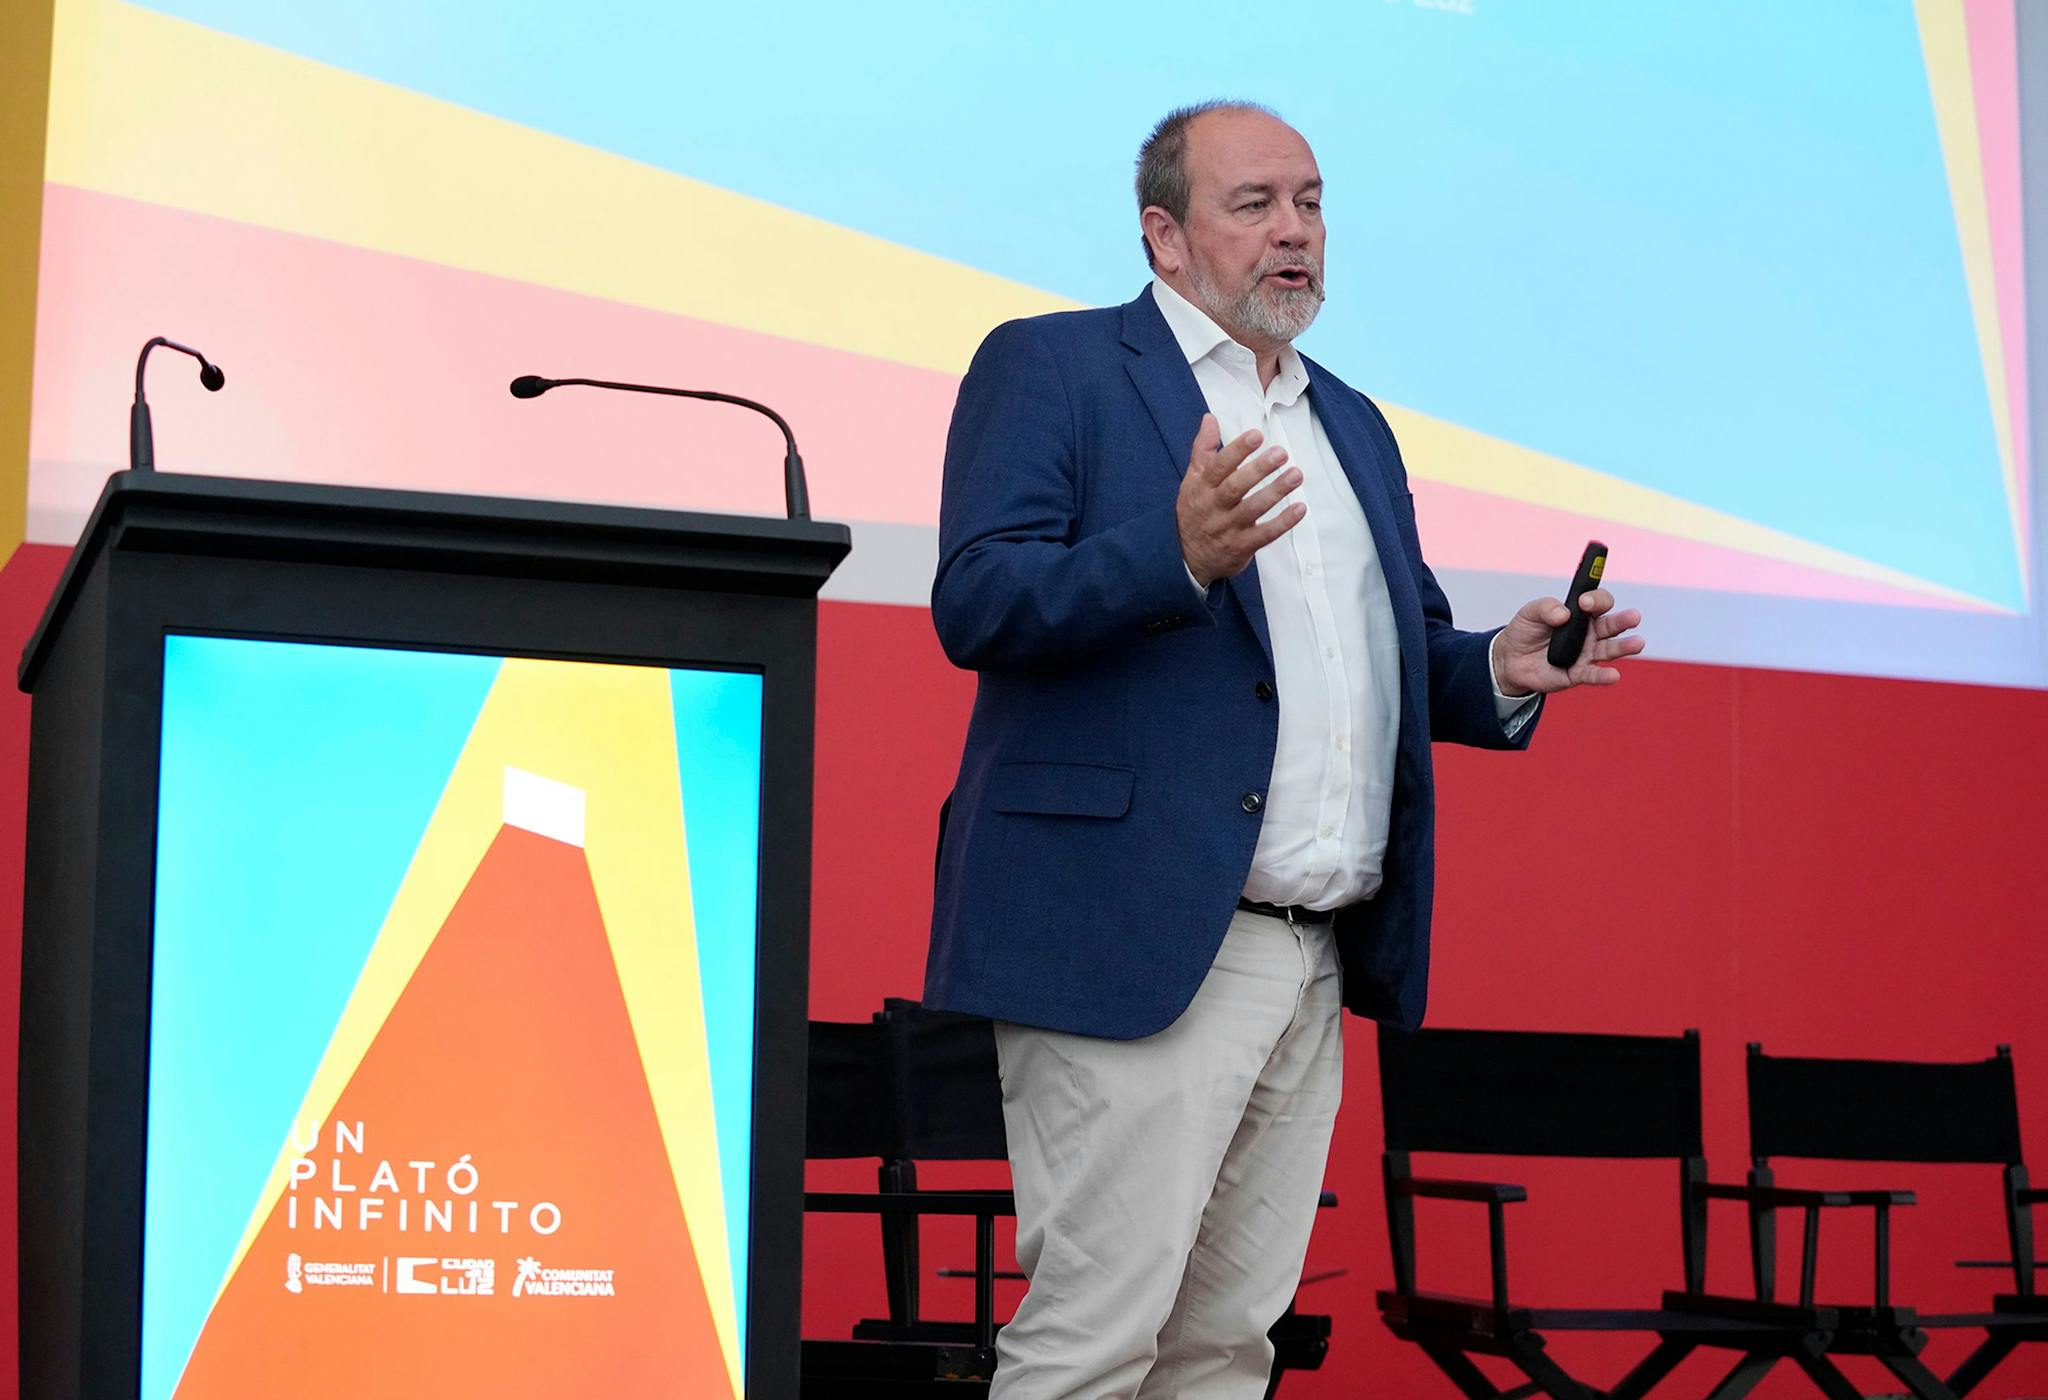 Fermín Crespo, director general de Ciudad de la Luz, durante su intervención en la jonada ‘Un Plató Infinito’